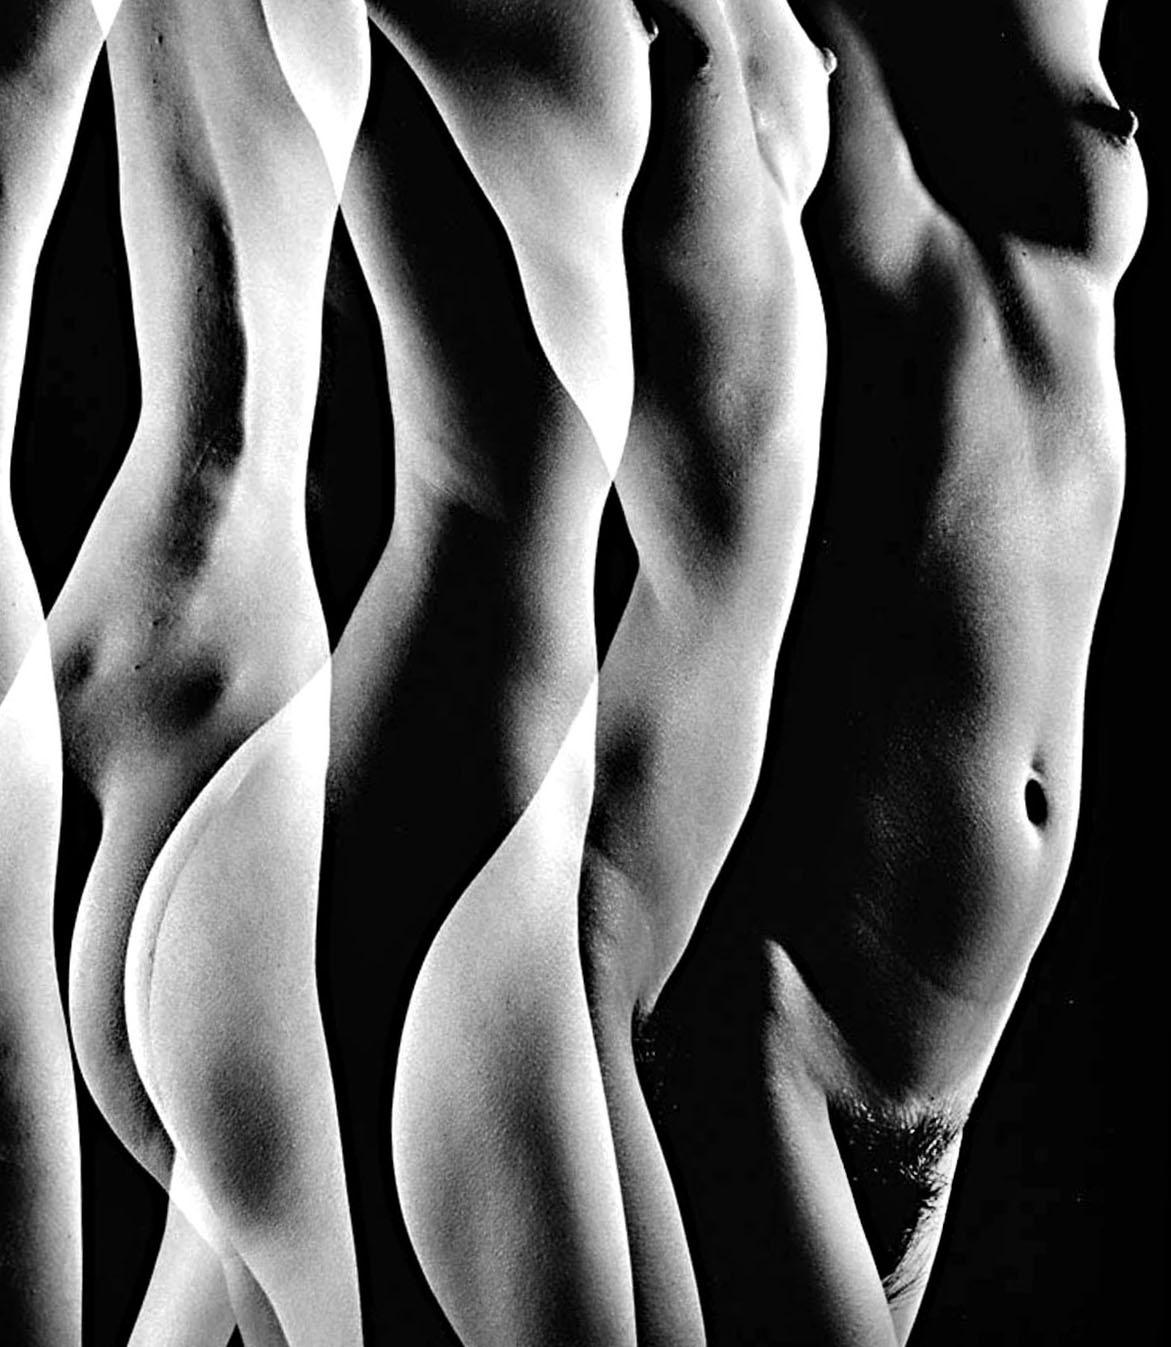 Female Nude aus der Serie Numbered Nudes, signierter Ausstellungsdruck, Mehrfach exposure – Photograph von Jack Mitchell